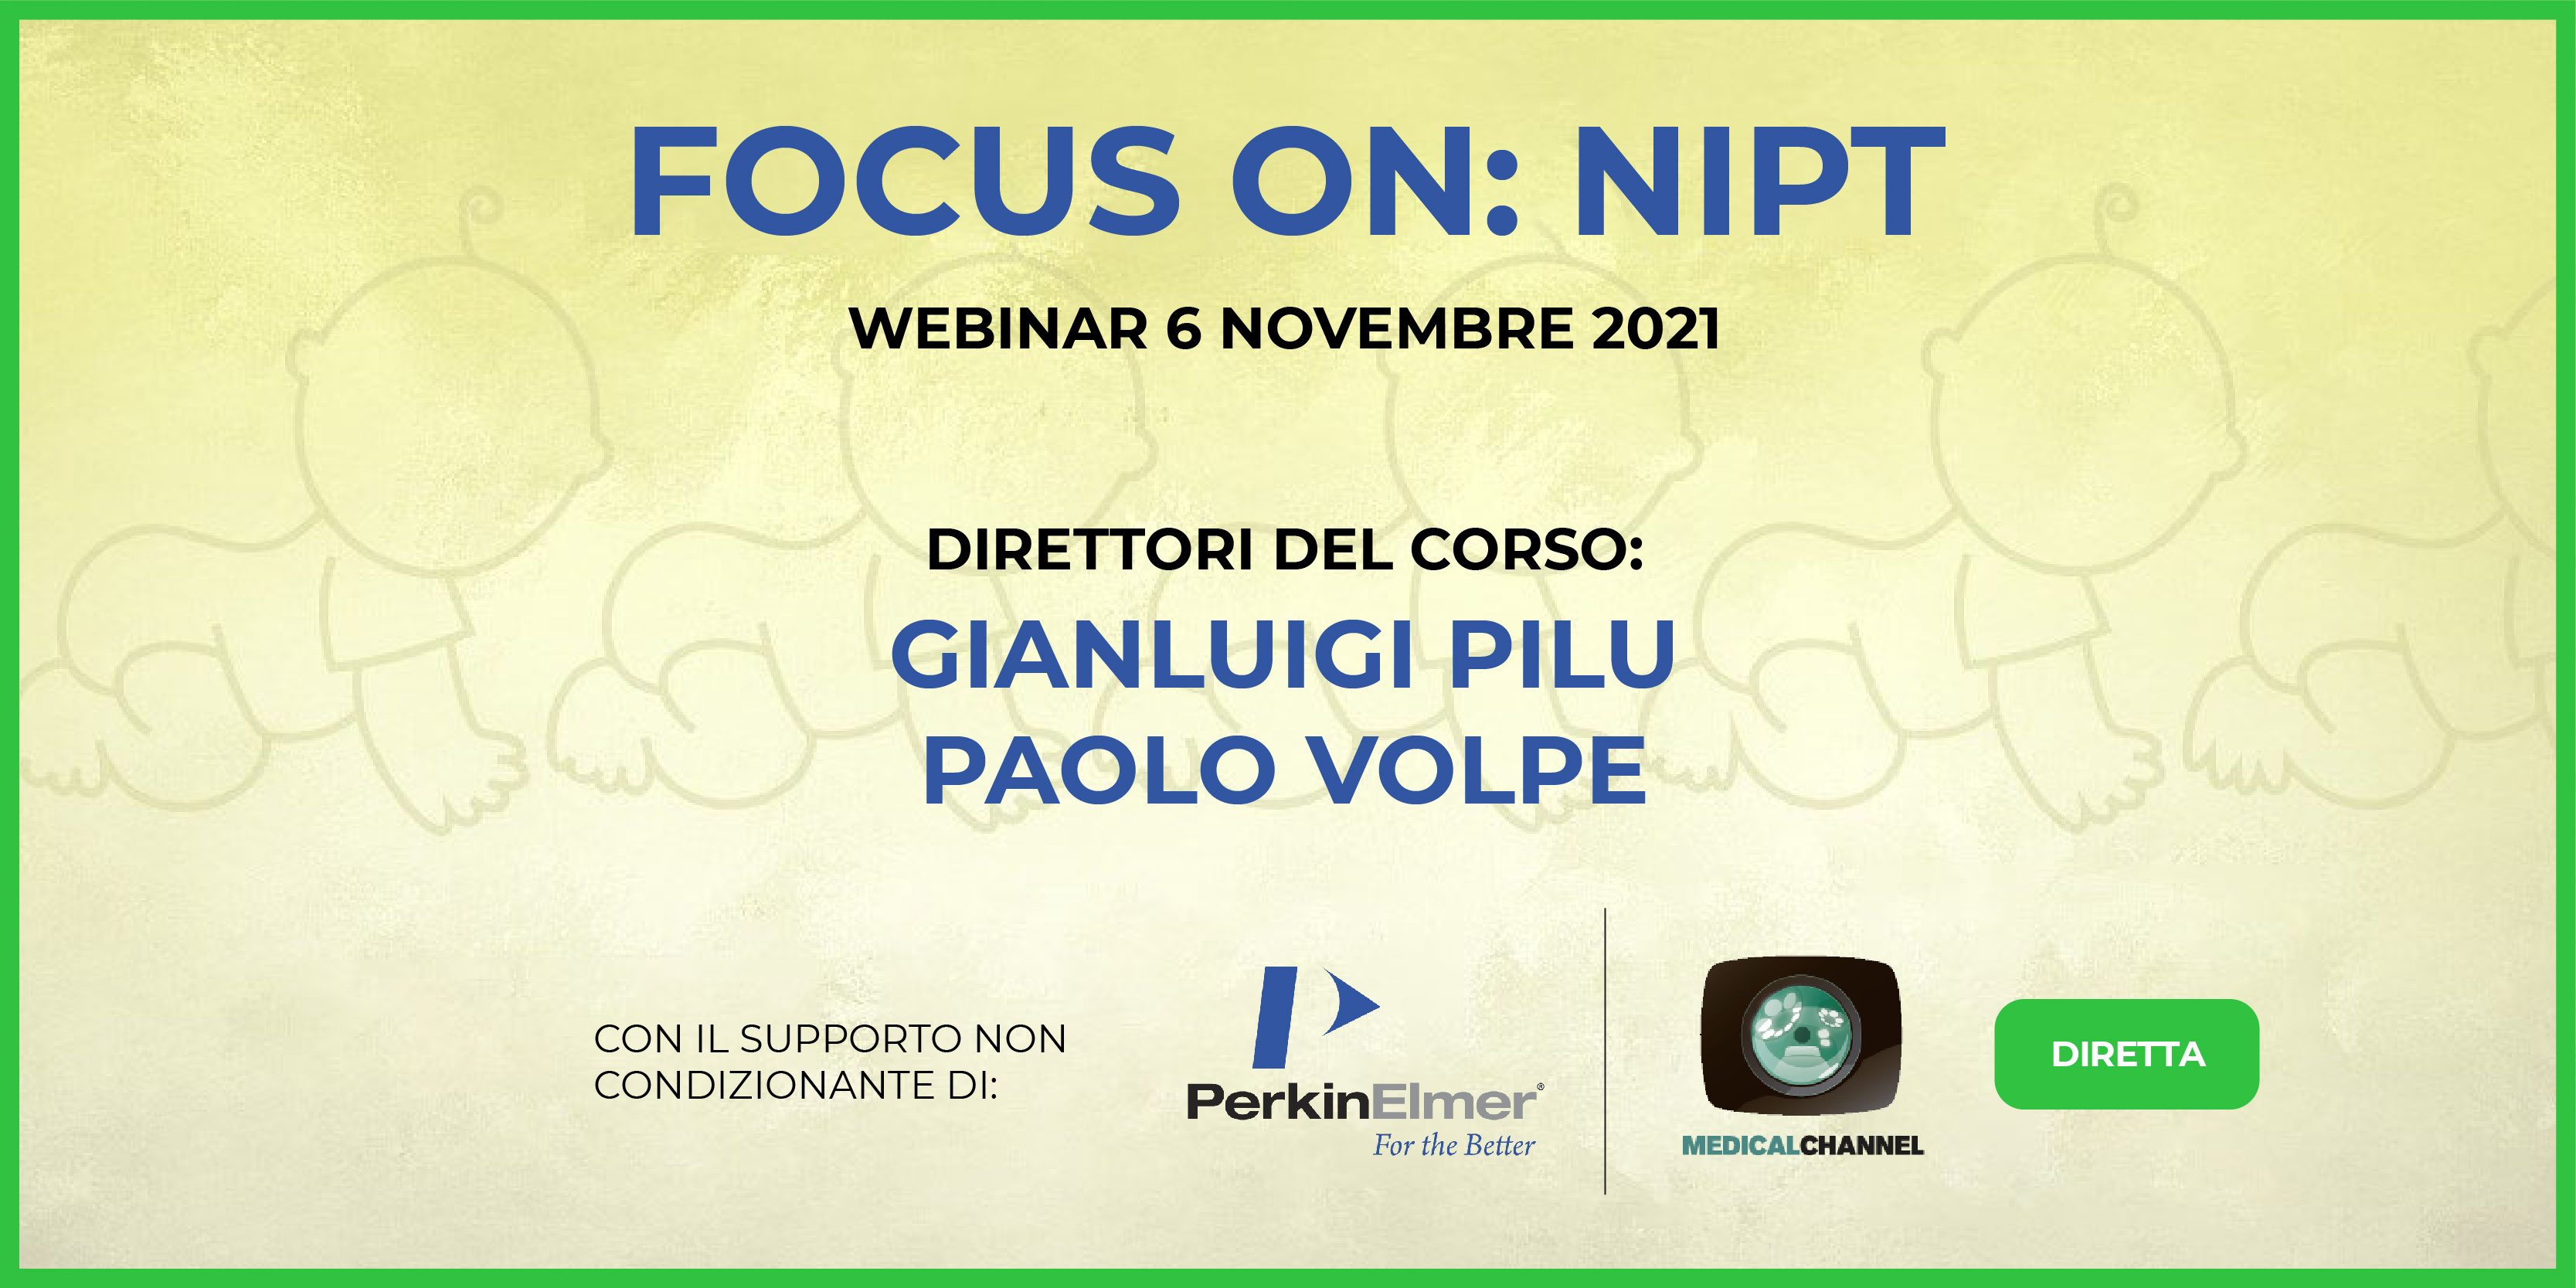 Focus on: NIPT